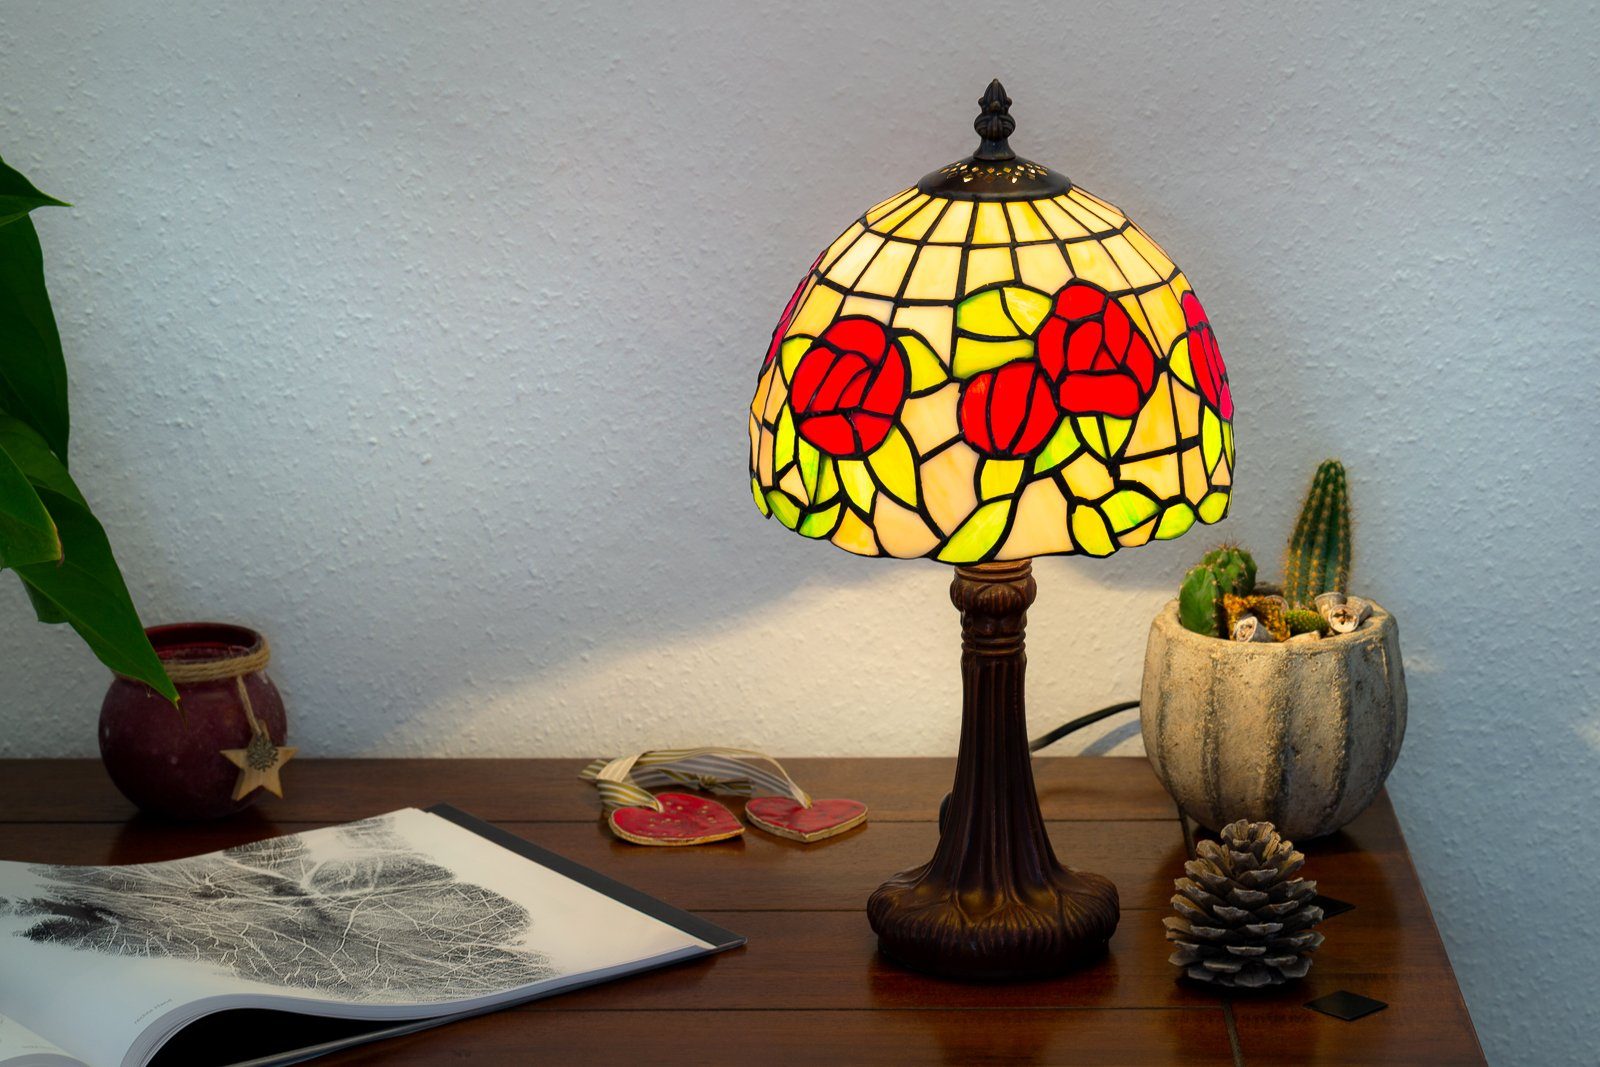 Stehlampe Lampe Tiff149 Motiv Tiffany Rosen Style Tischlampe Birendy BIRENDY